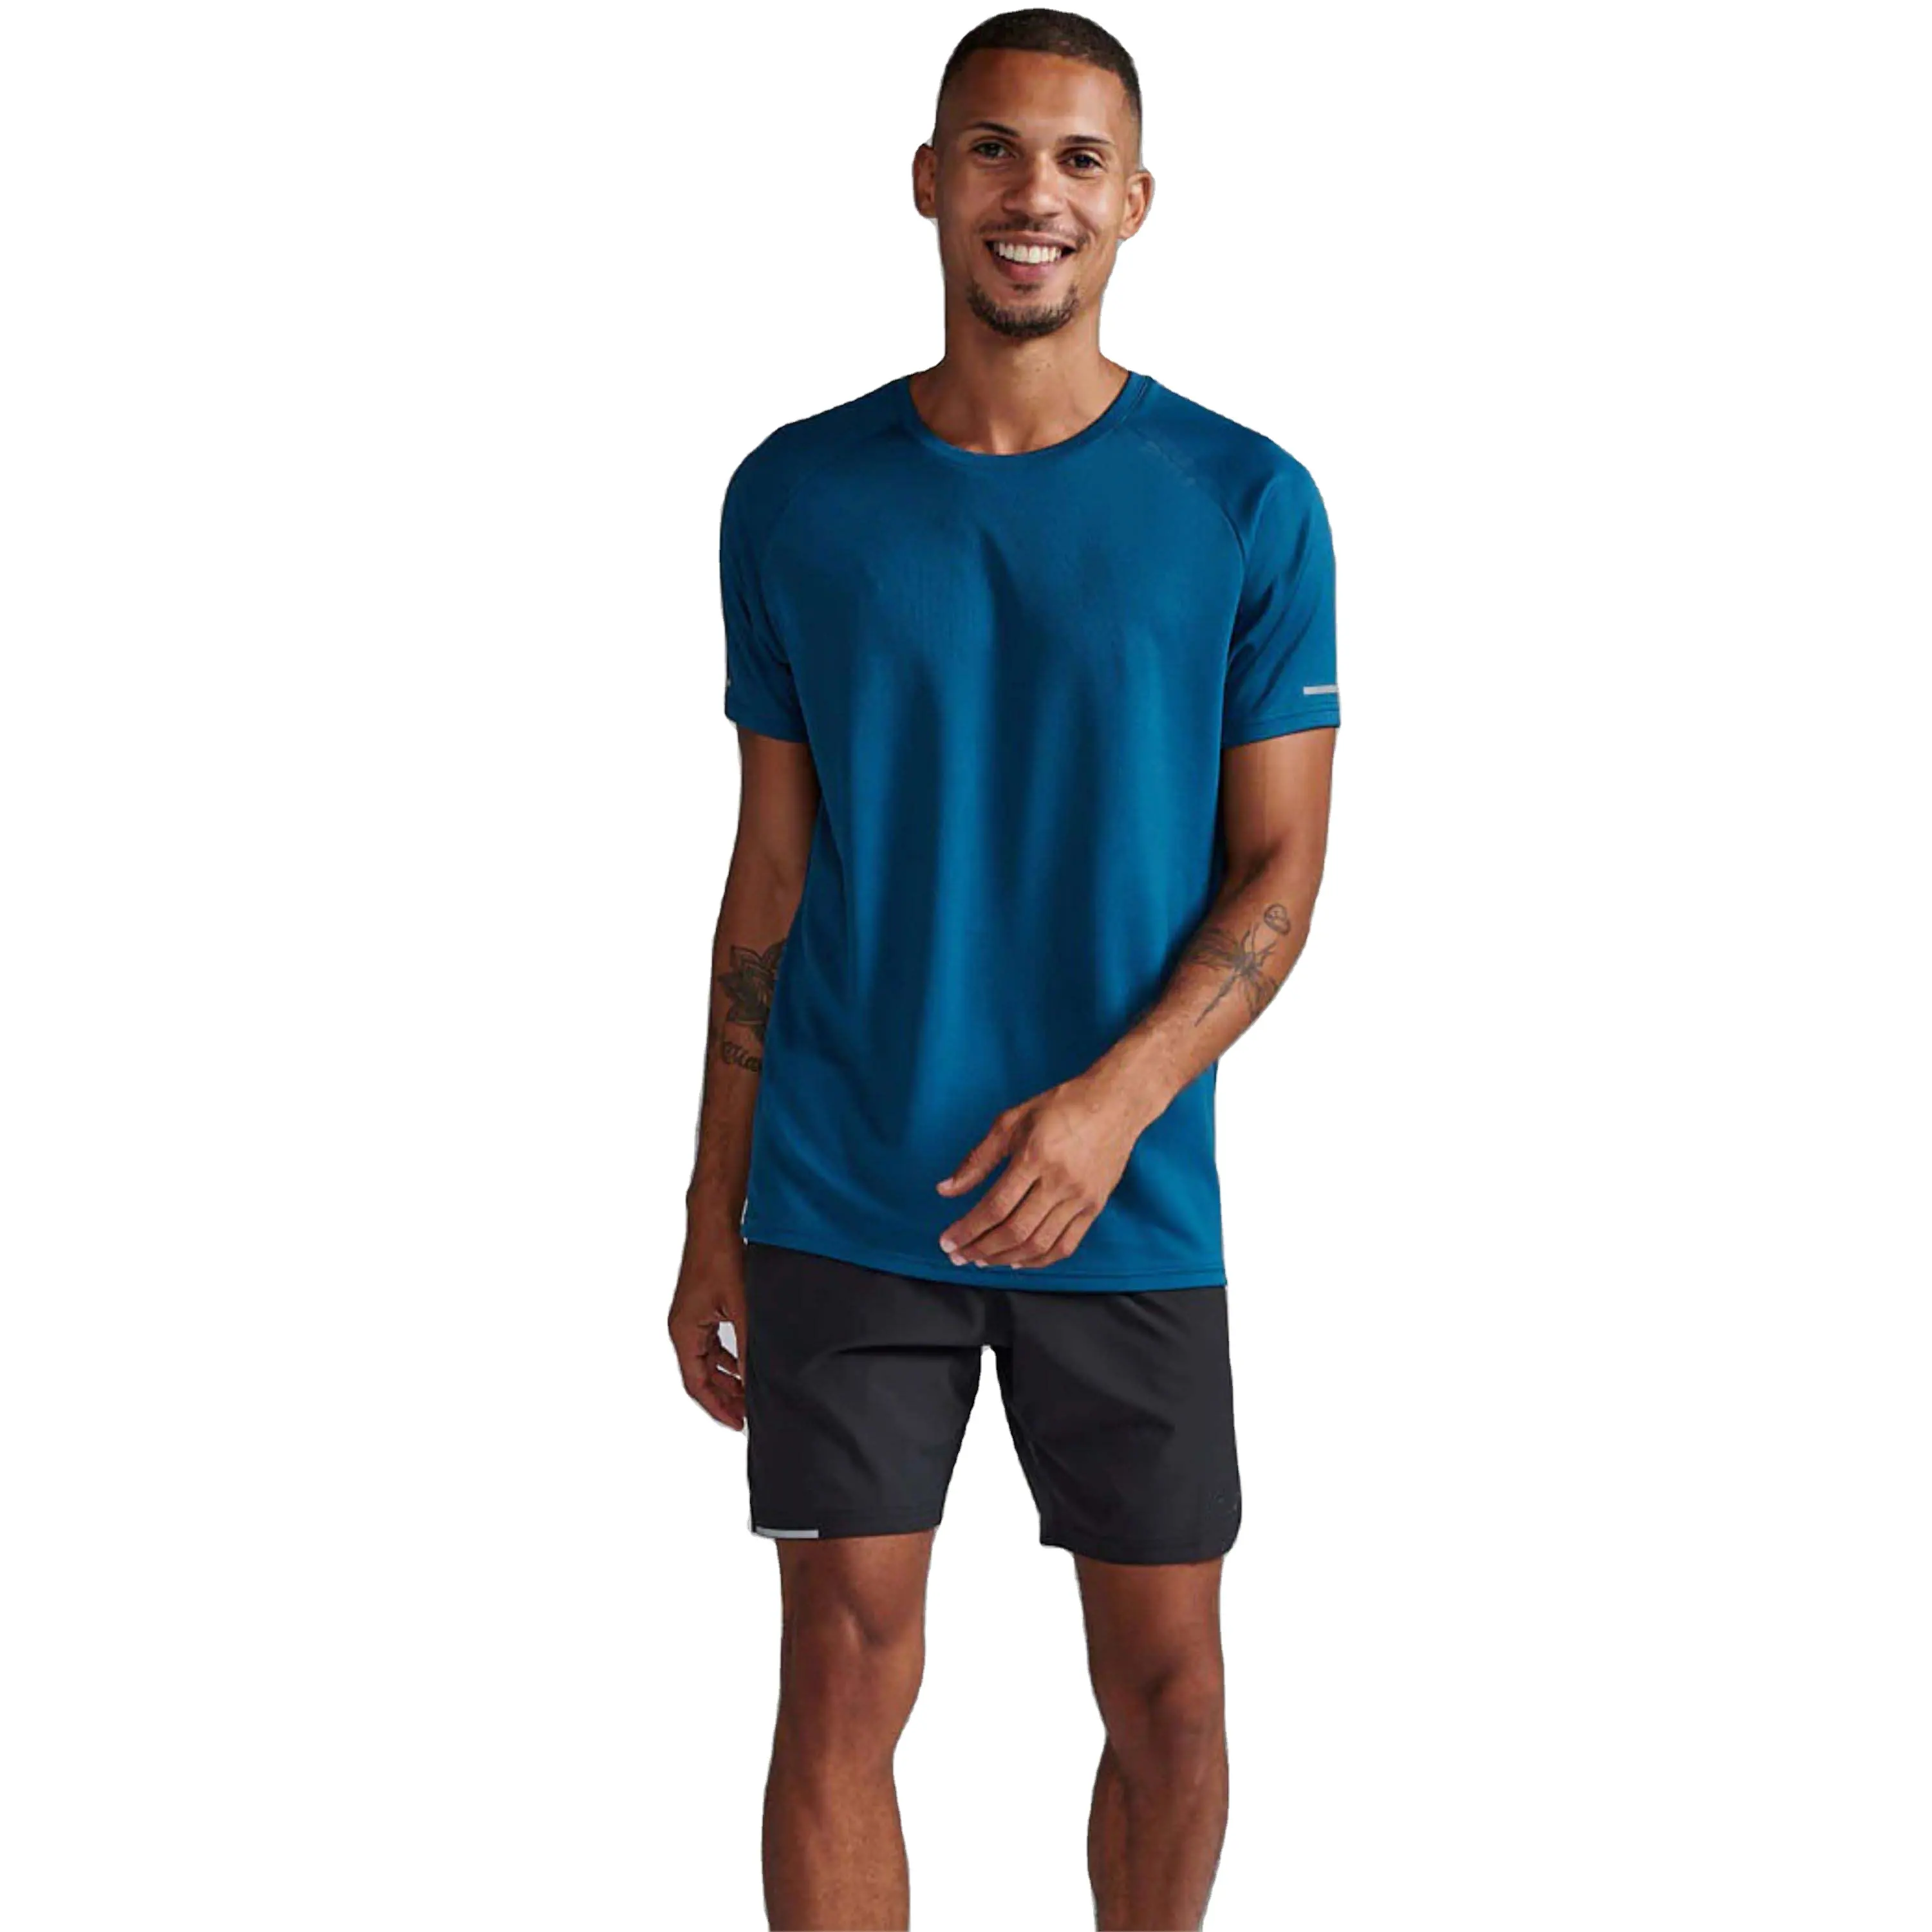 उच्च गुणवत्ता वाले पुरुषों की फिटनेस प्रशिक्षण जिम टी-शर्ट: कस्टम लोगो प्रिंट, संपीड़न शर्ट, विभिन्न आकार में उपलब्ध